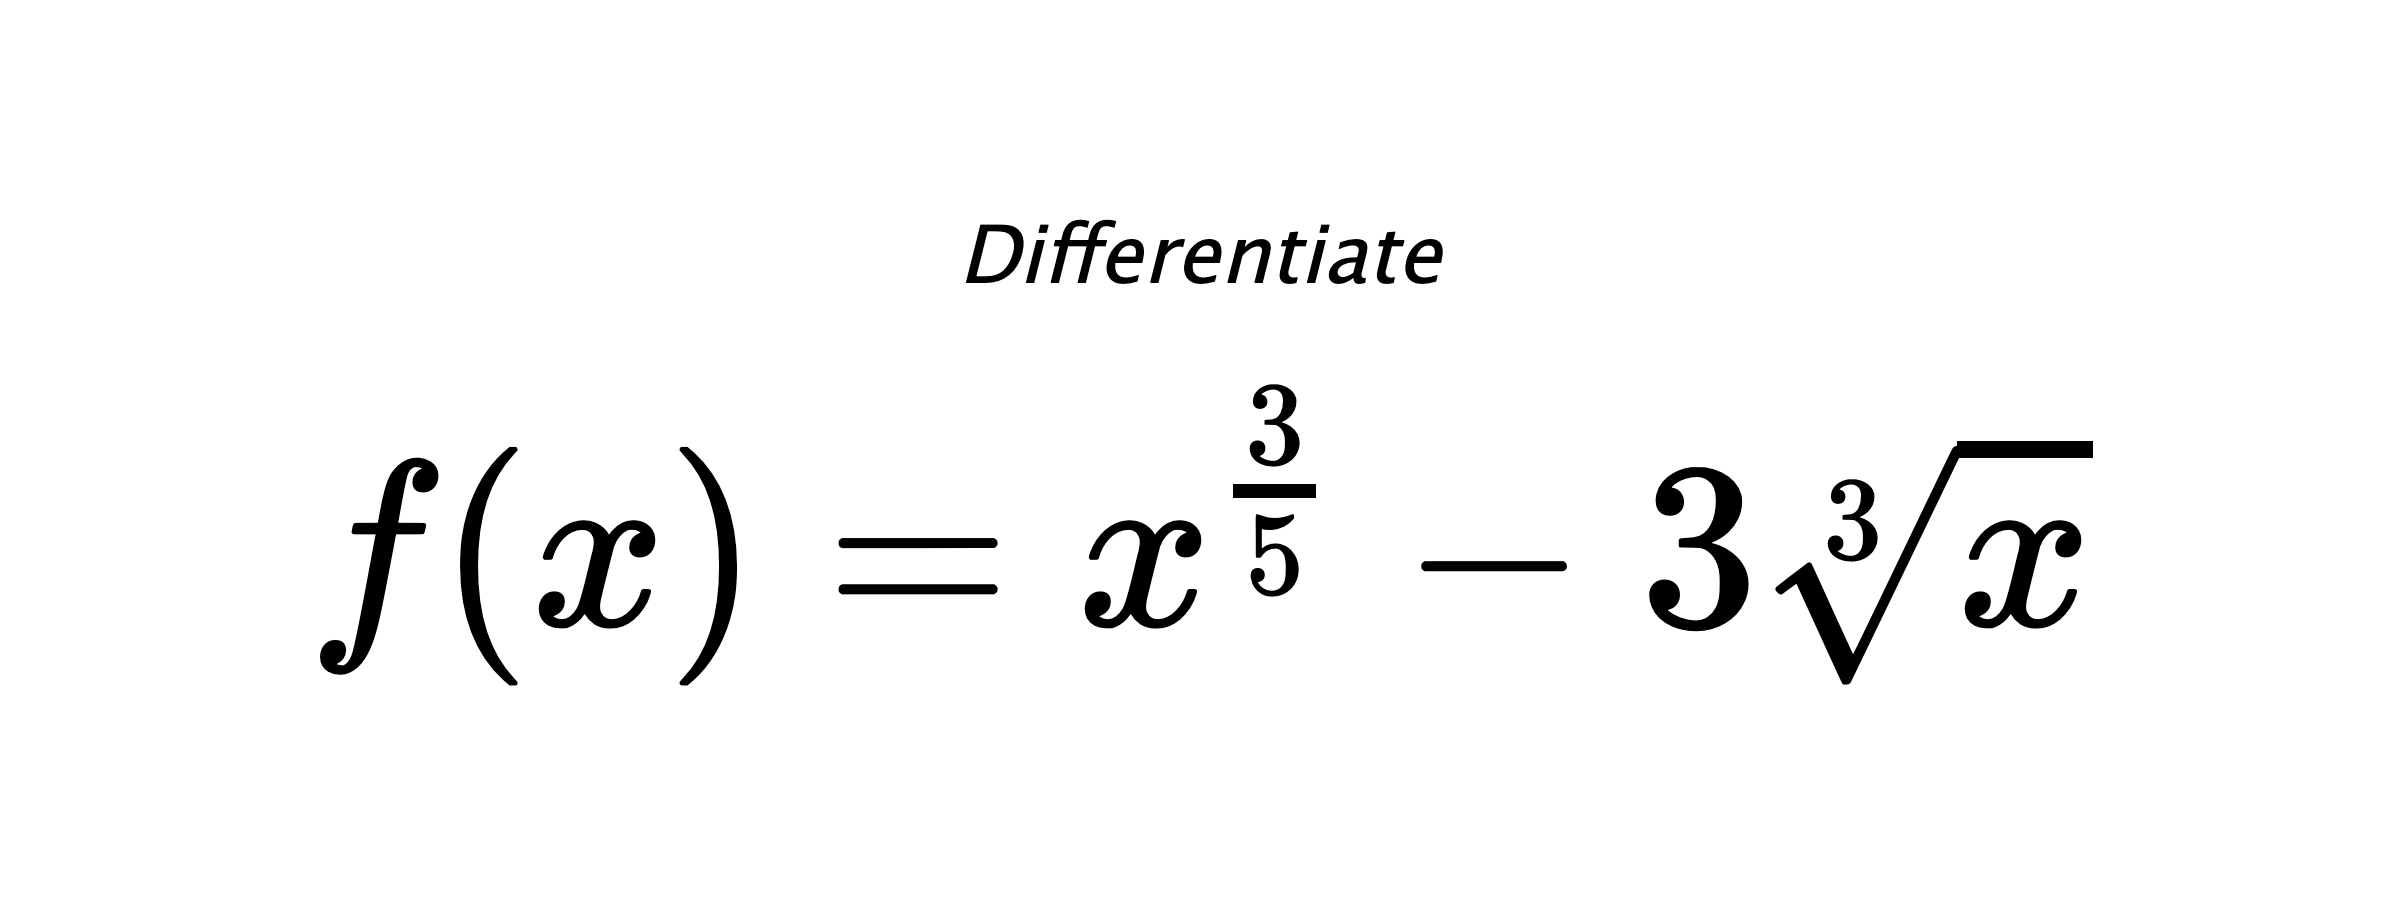 Differentiate $ f(x) = x^{\frac{3}{5}} - 3 \sqrt[3]{x} $